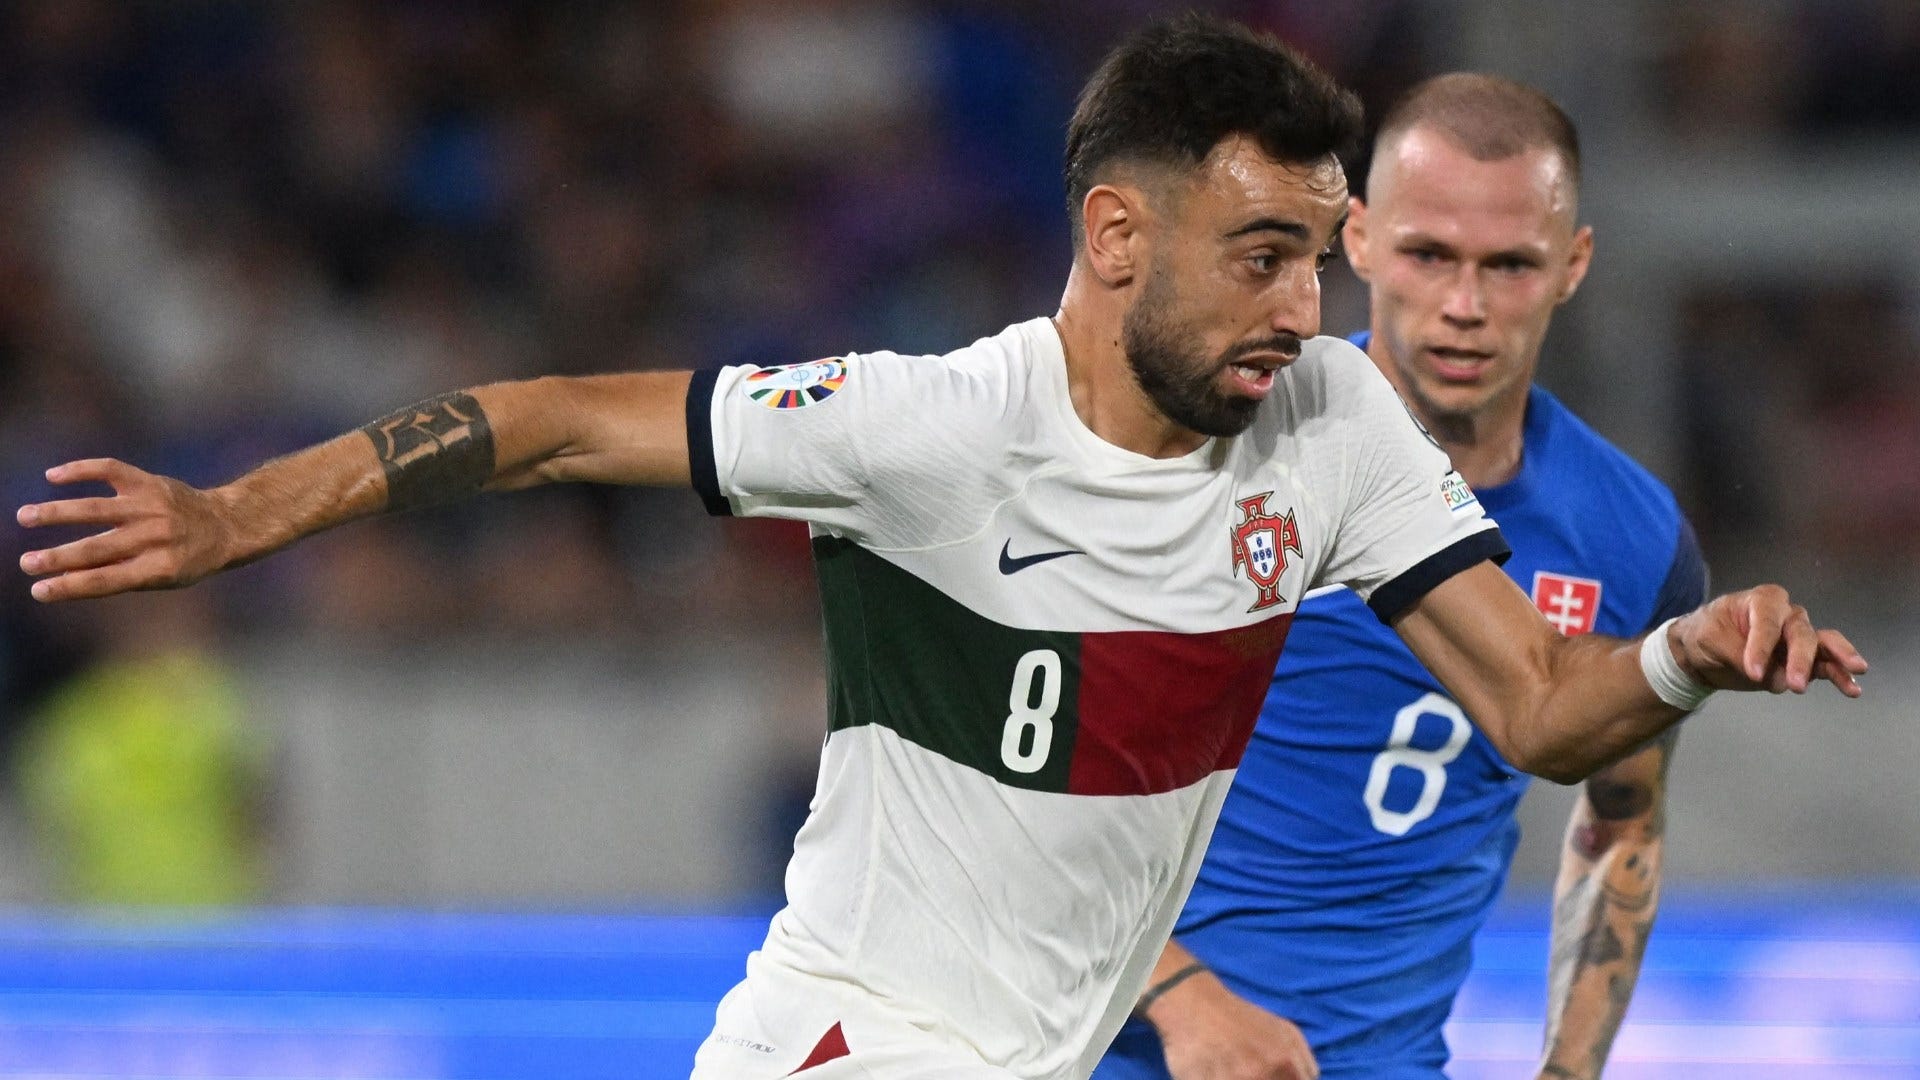 Hodnotenie hráčov Portugalska vs. Slovensko: Brilantný Bruno Fernandes zachránil situáciu, keď Ronaldo zaváhal pri víťazstve v kvalifikácii na Euro